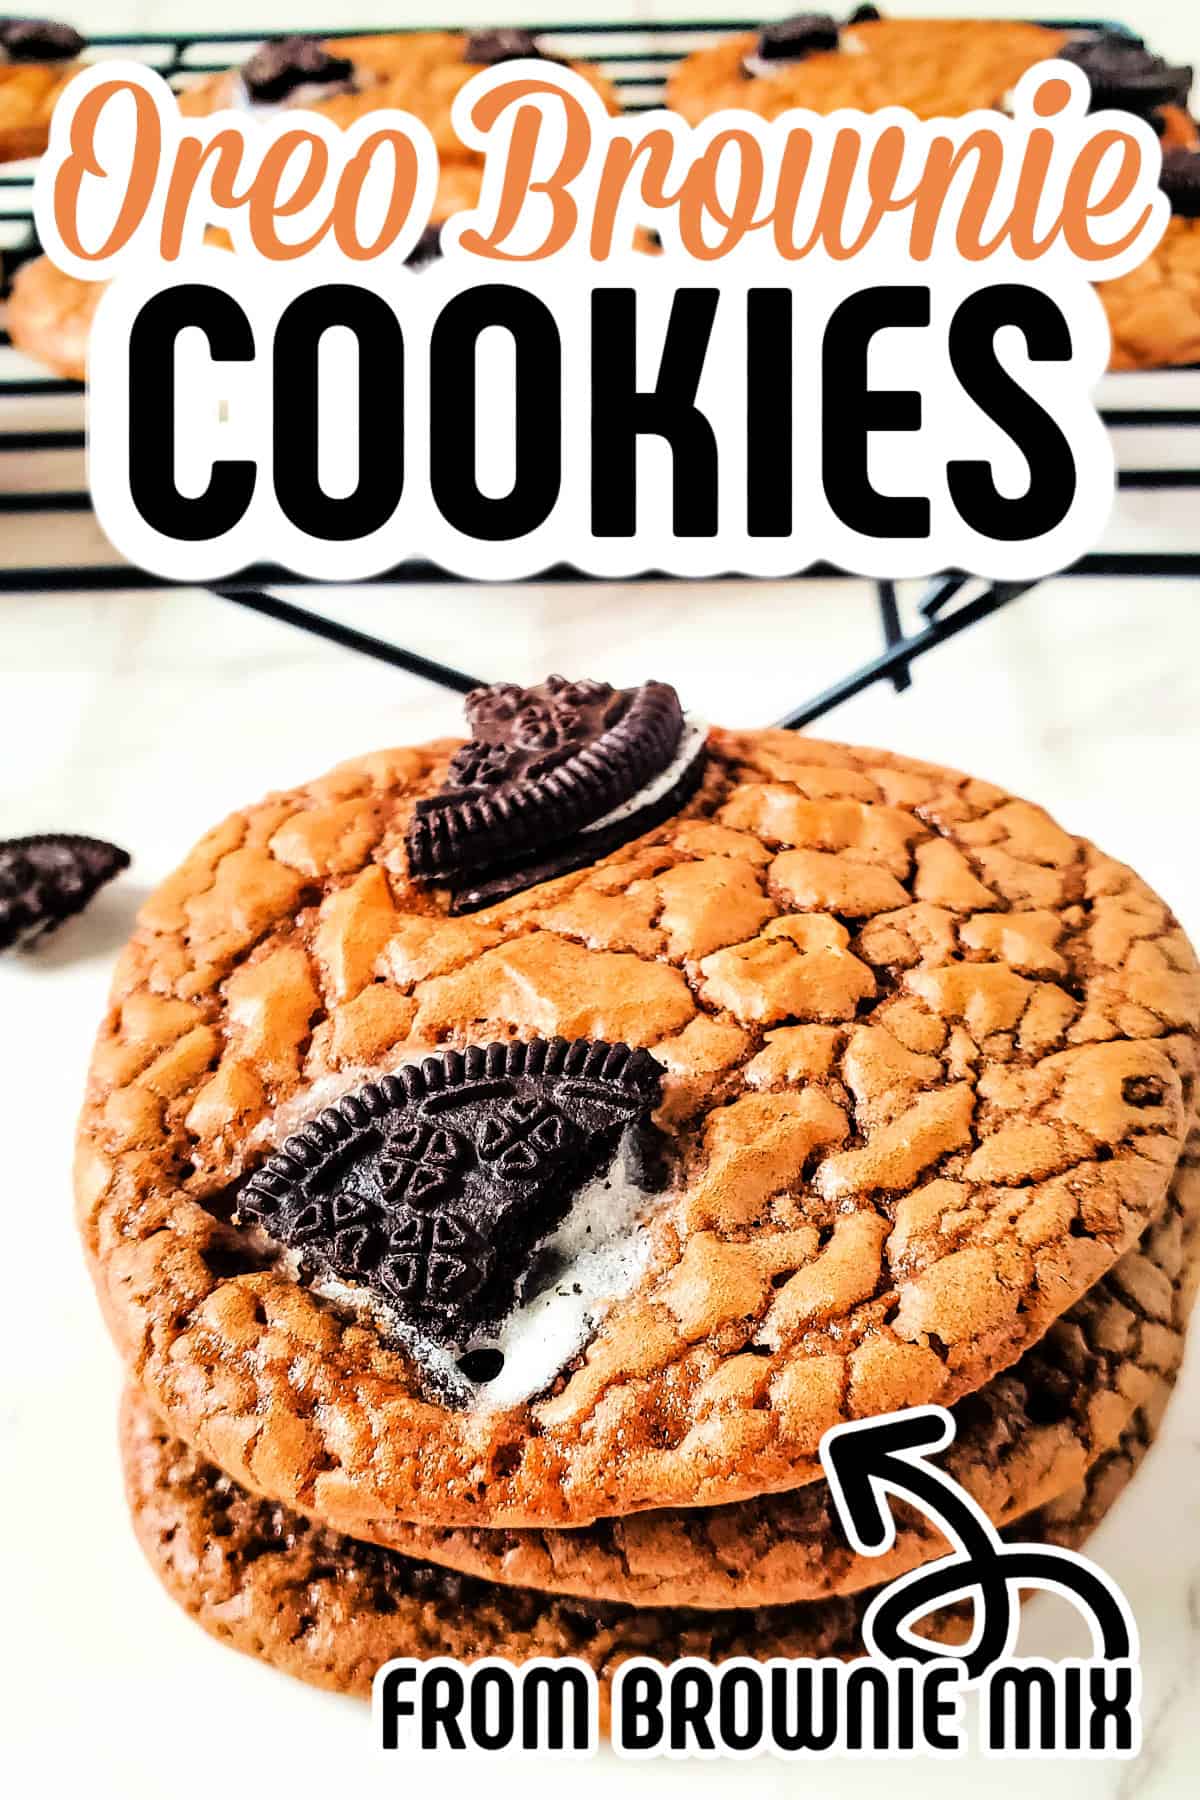 oreo brownie cookies